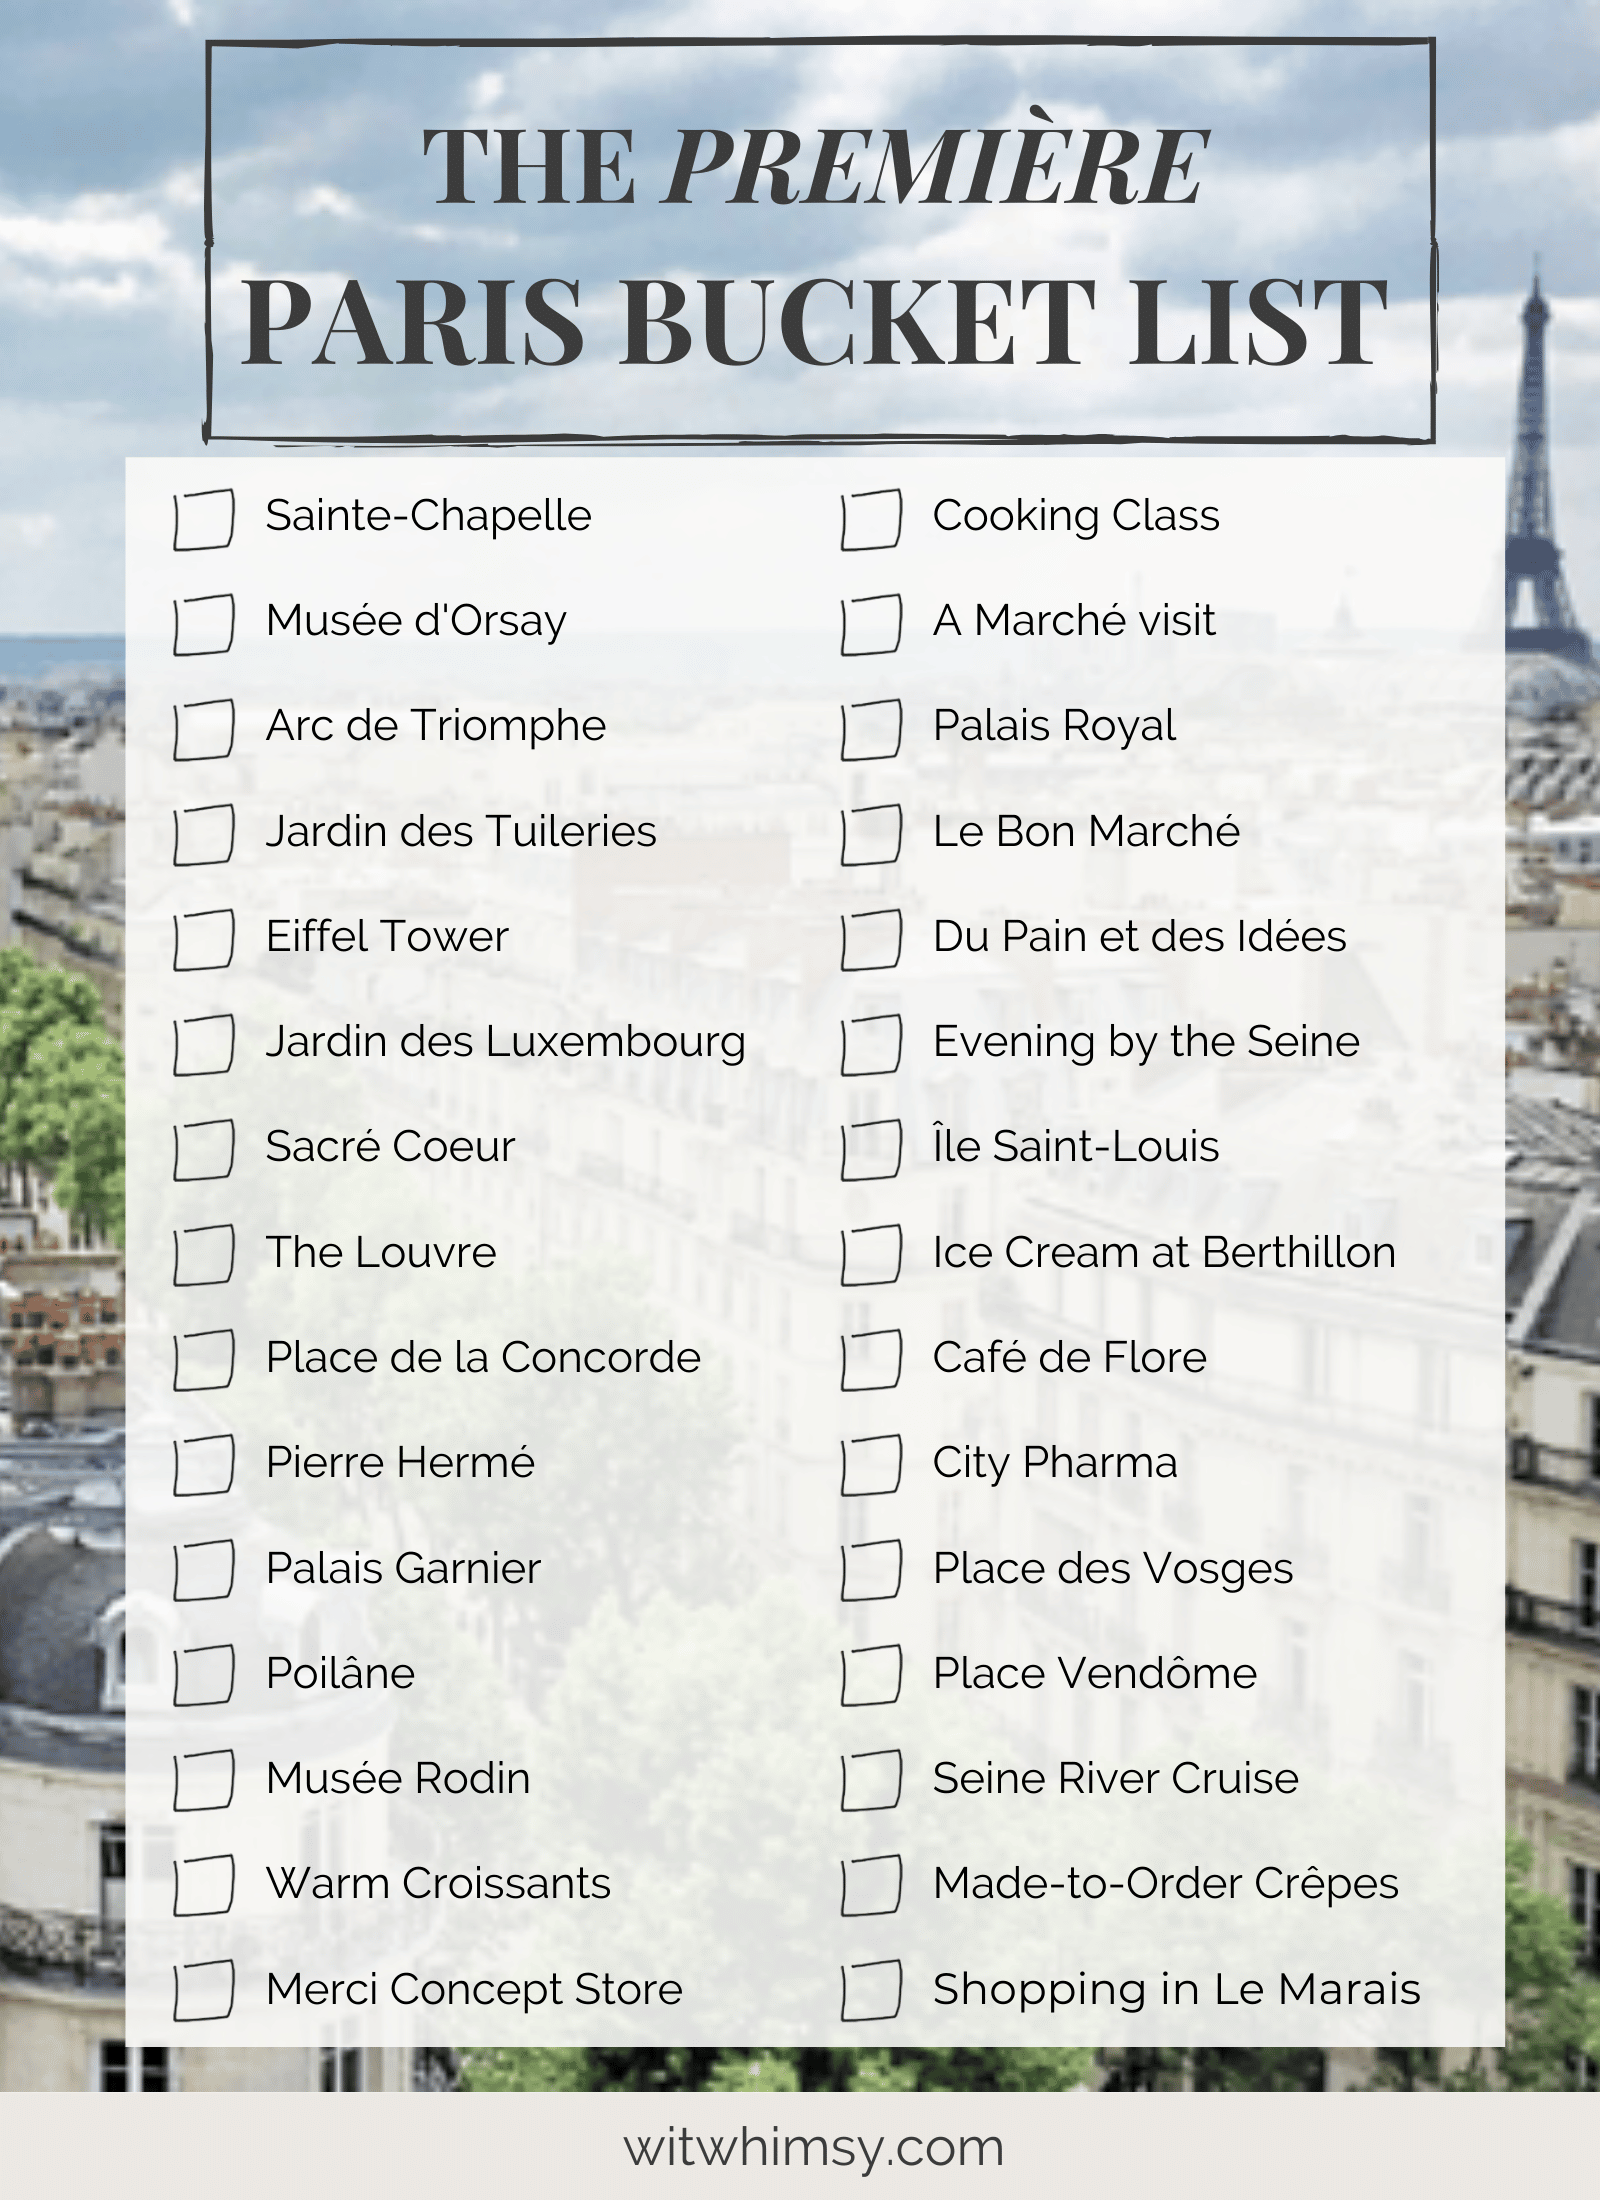 Paris Bucket List